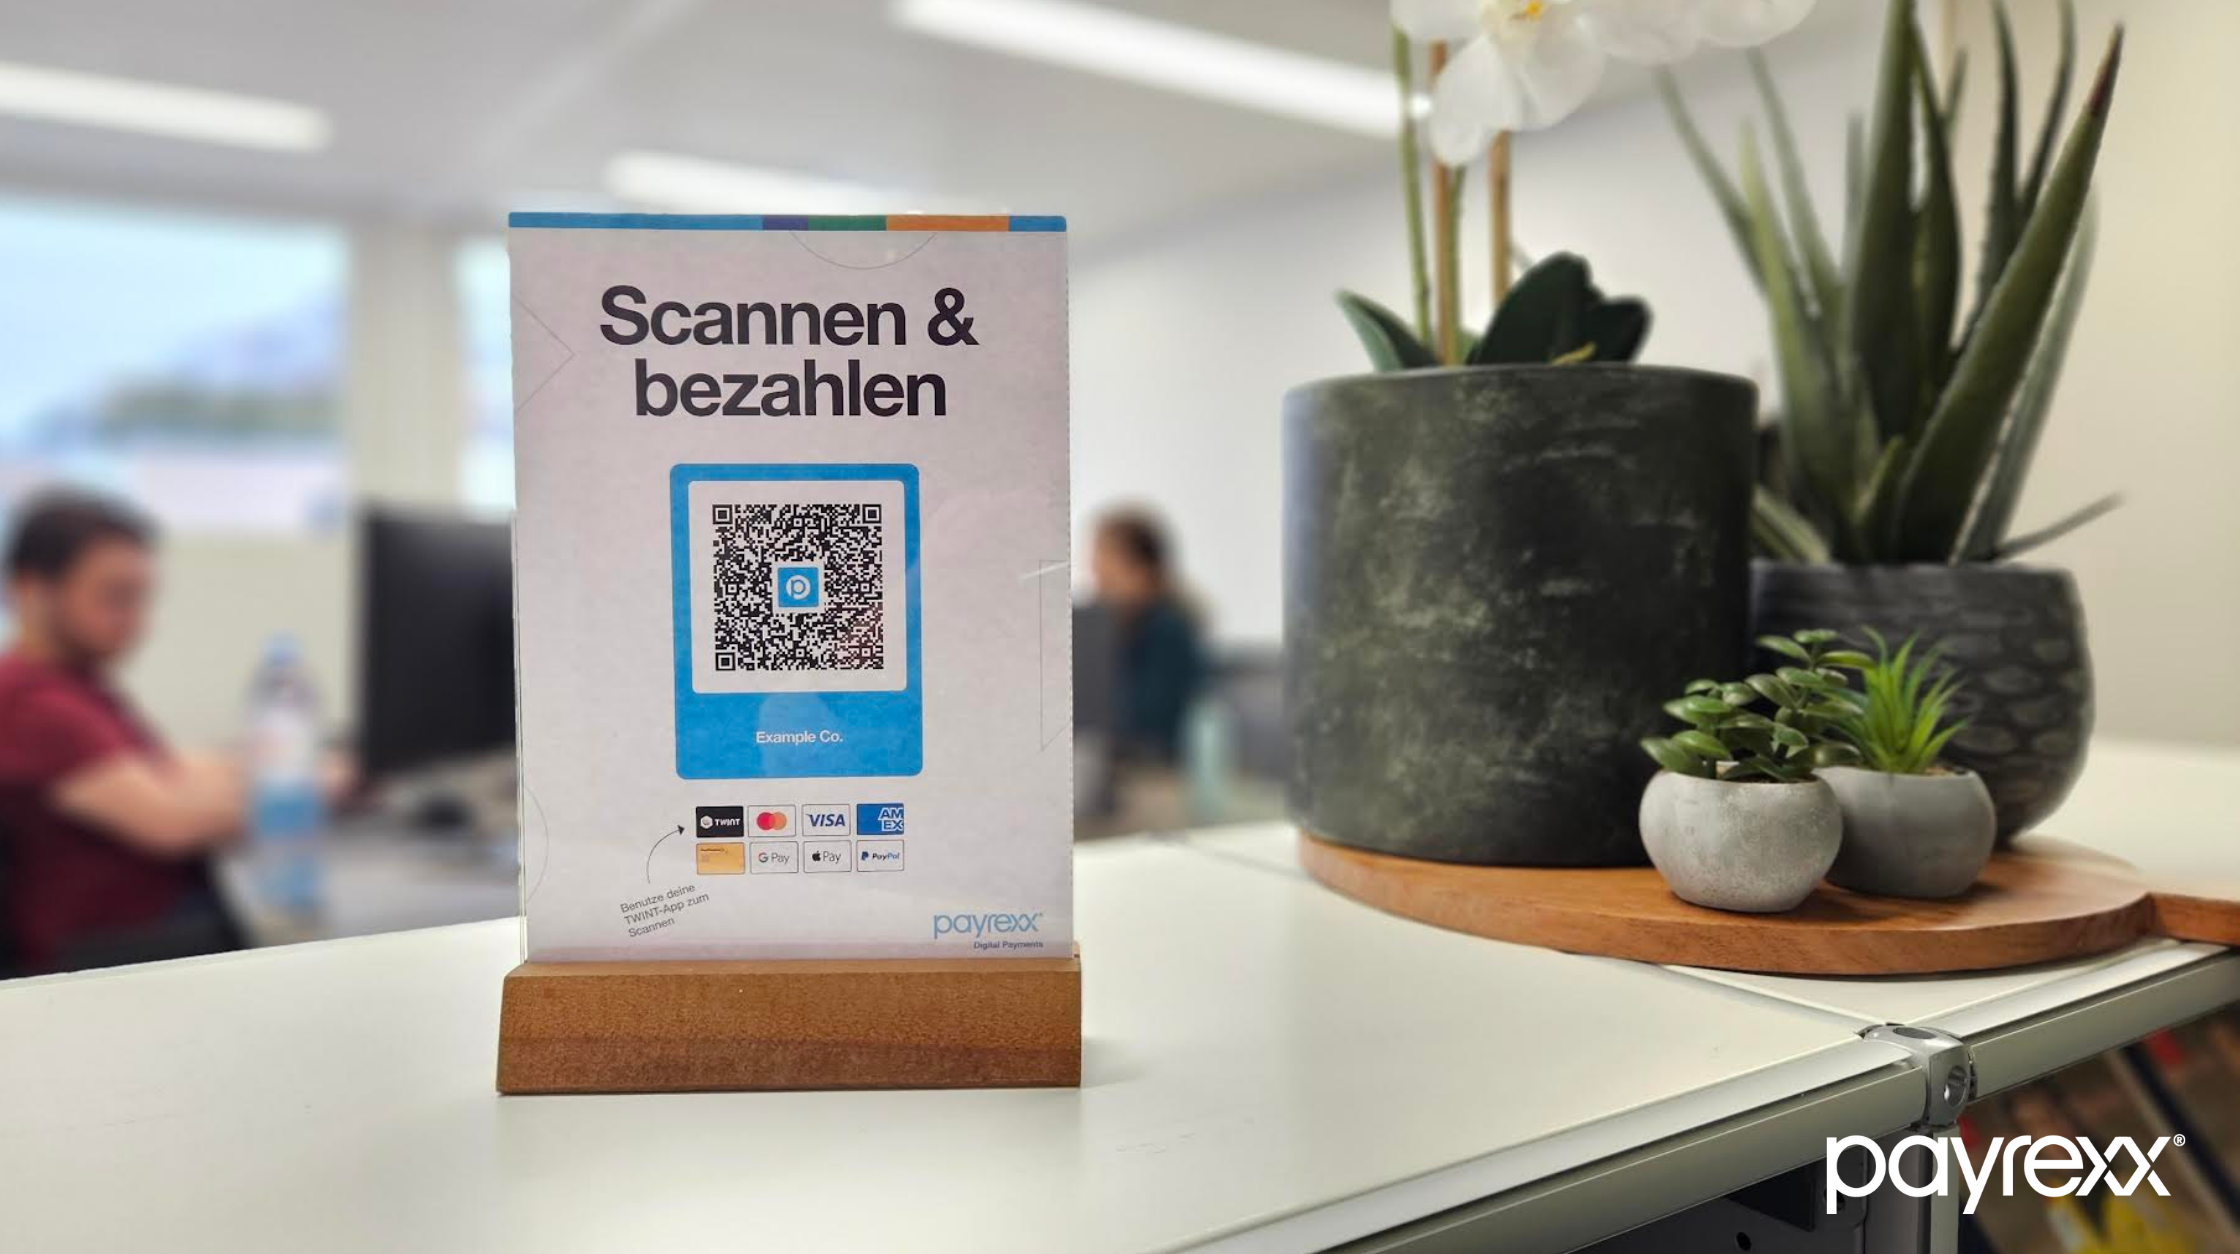 "Payrexx QR Pay" riceve il premio per l'innovazione dell'economia dell'Oberland bernese